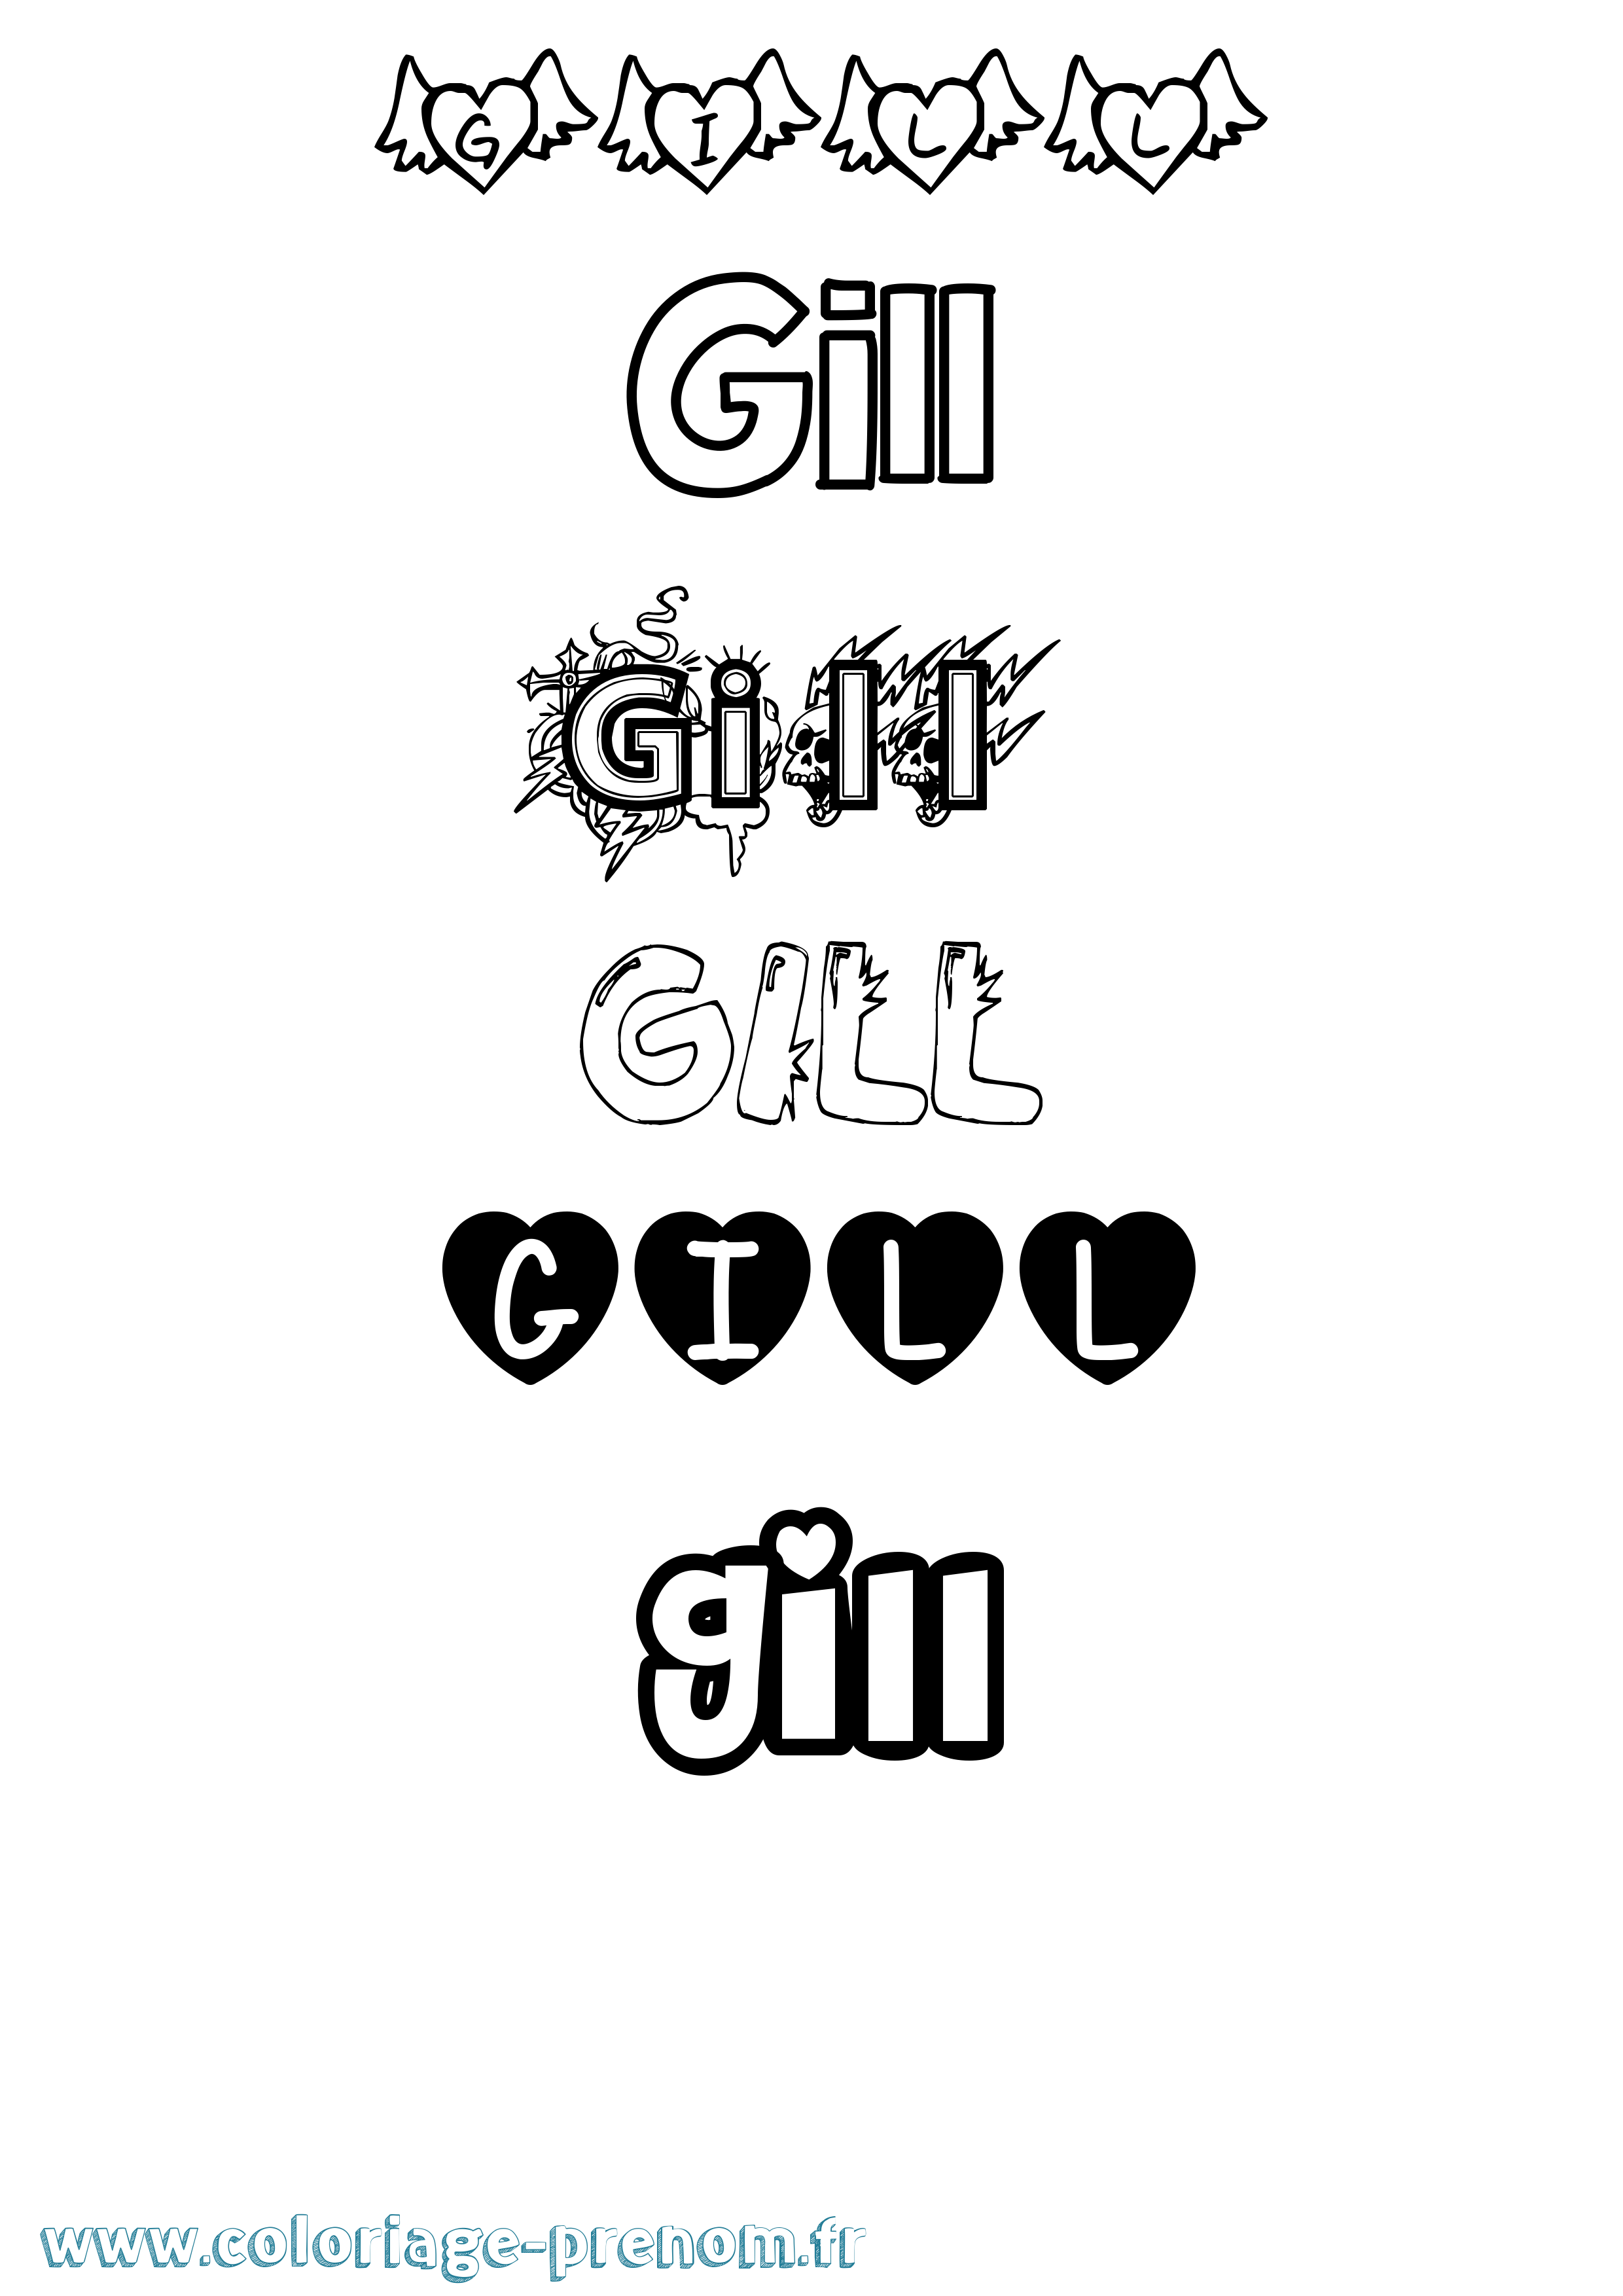 Coloriage prénom Gill Girly